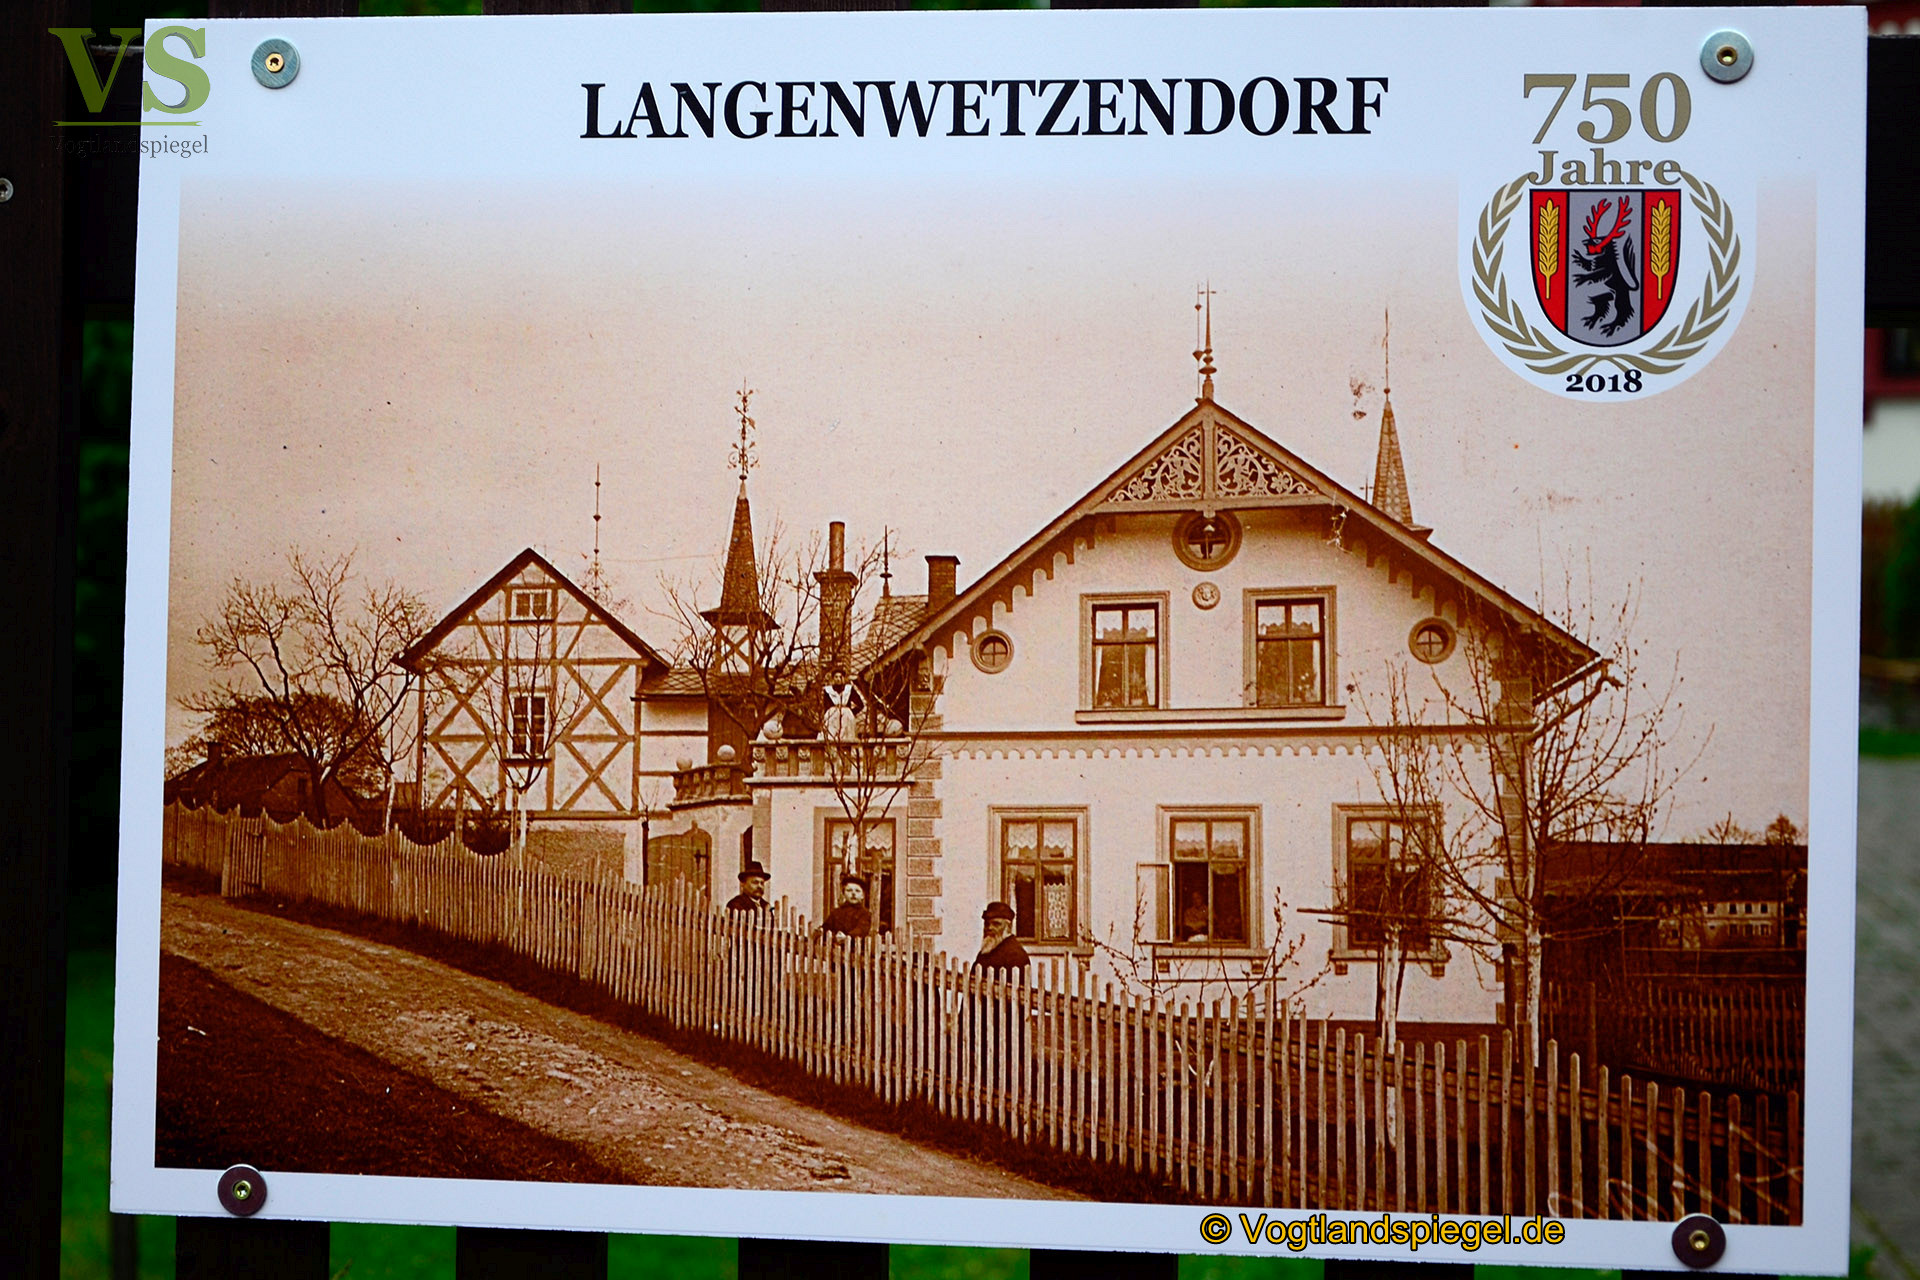 Langenwetzendorf: 750-jähriges Jubiläum im Rahmen des Parkfestes